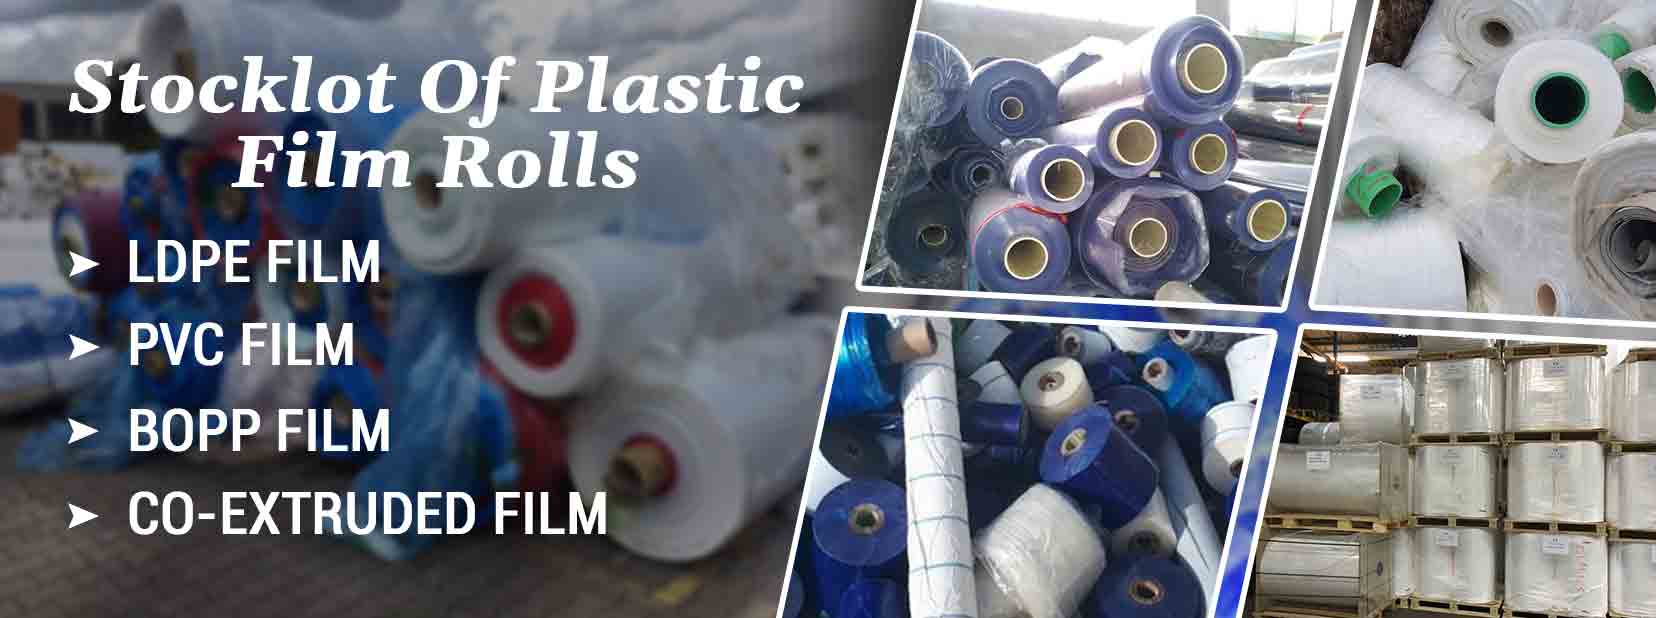 Stocklot Of Plastic Film Rolls